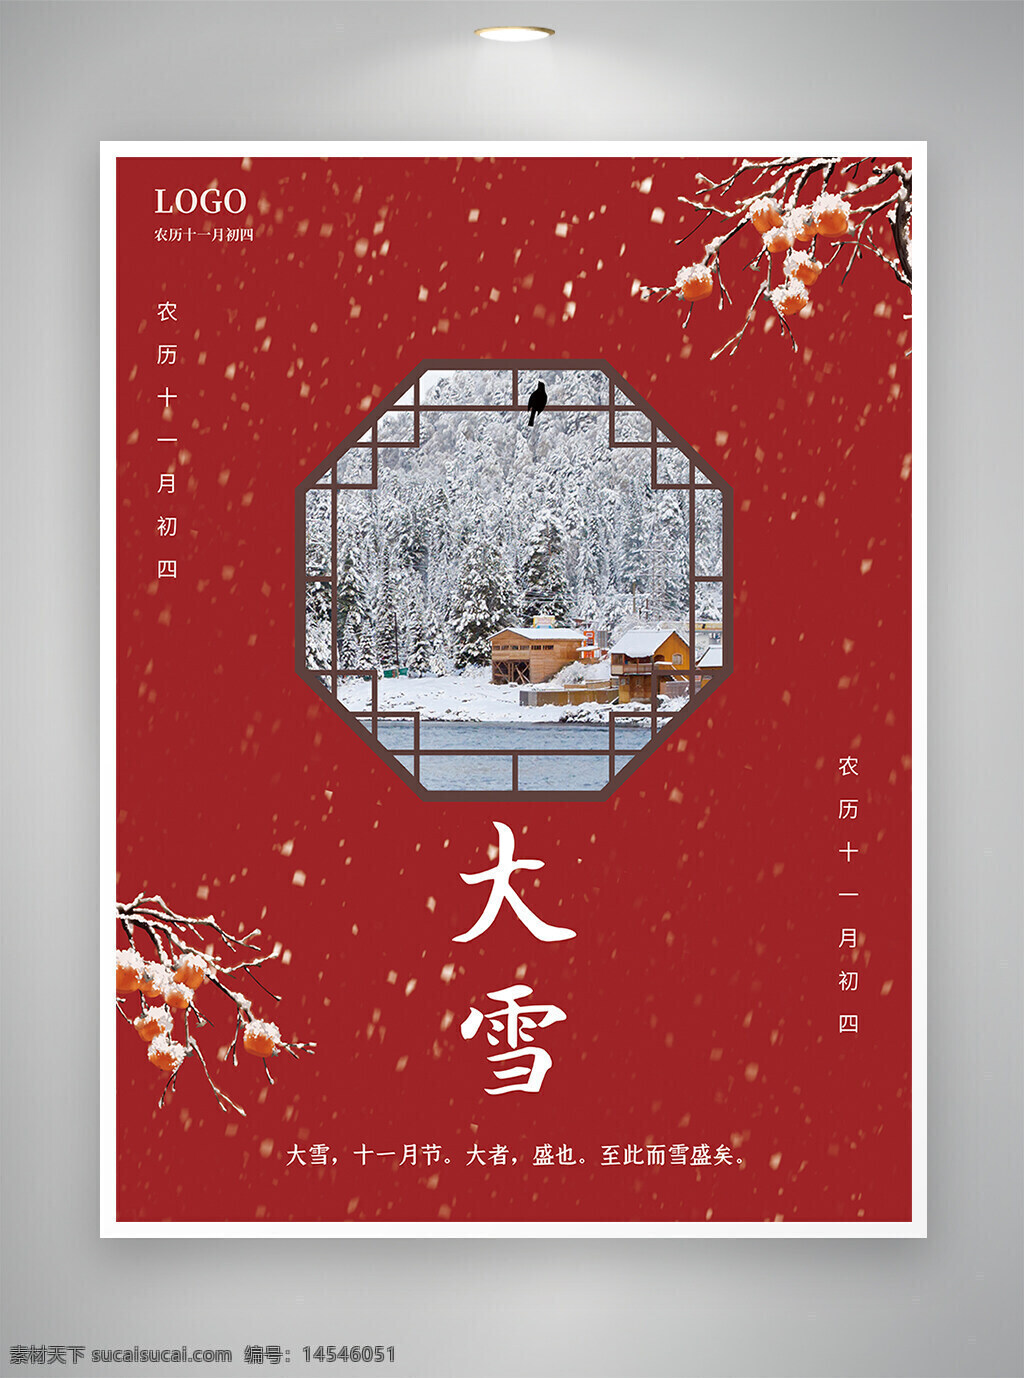 大雪 大雪节气 大雪海报 节气海报 海报 中国风 红色喜庆